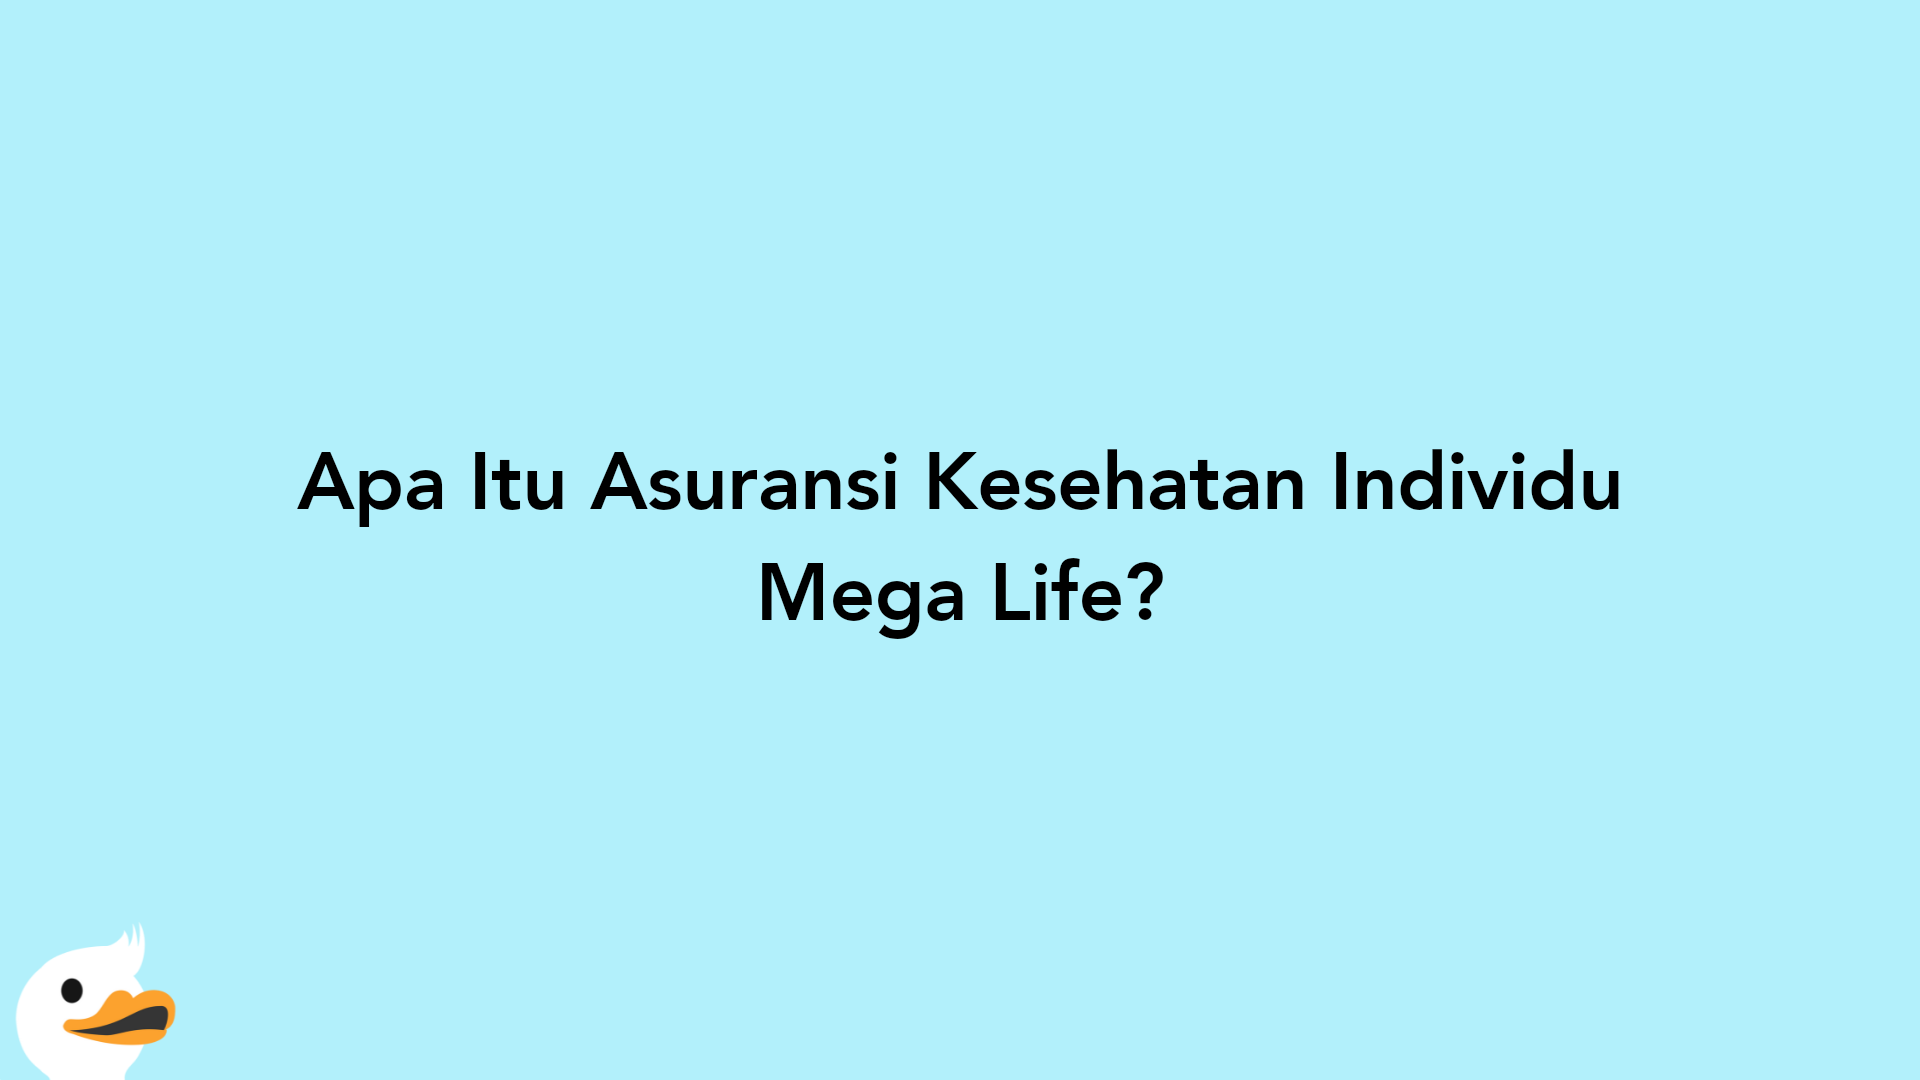 Apa Itu Asuransi Kesehatan Individu Mega Life?